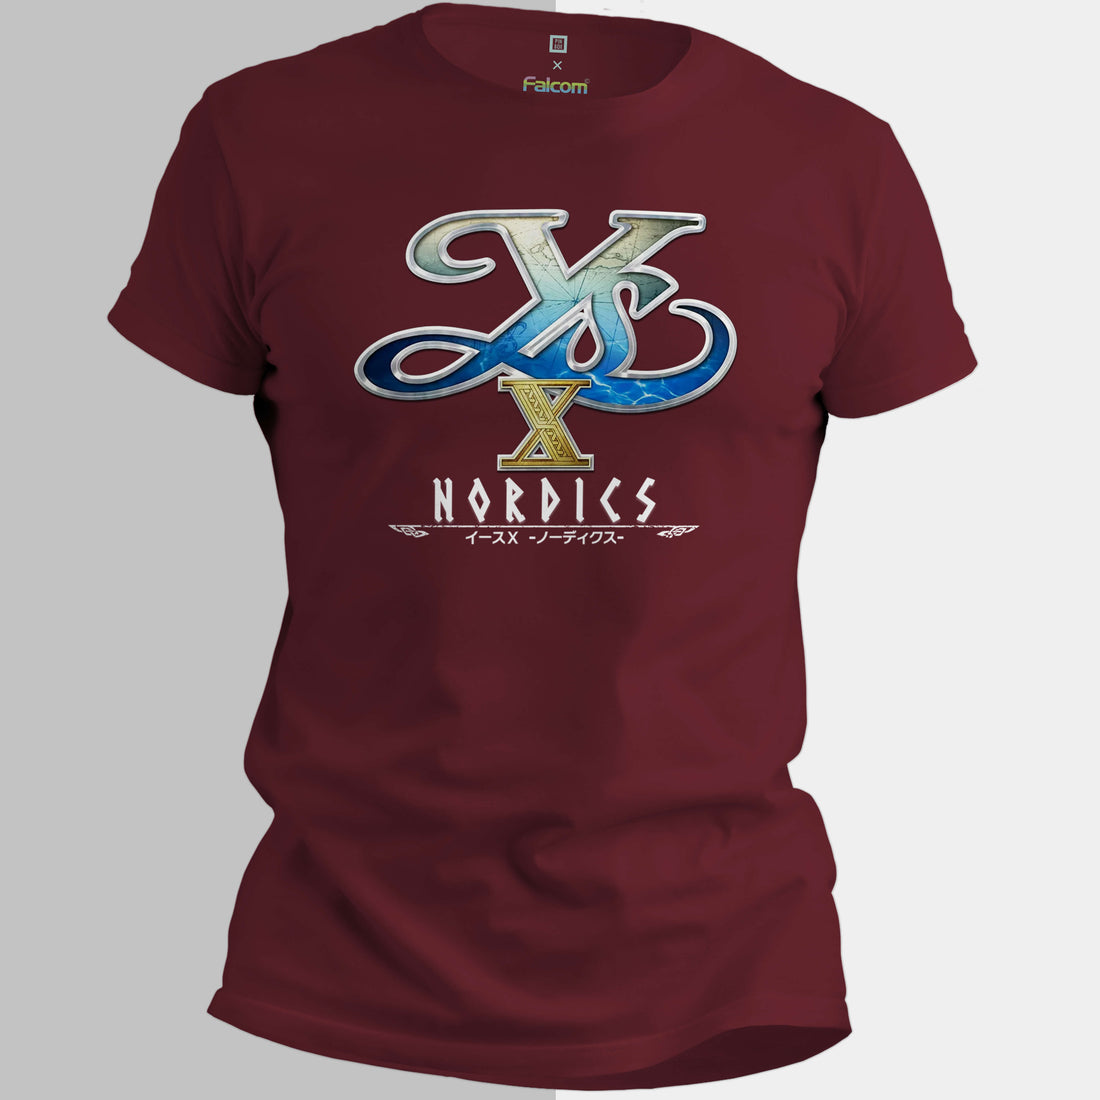 Ys X Logo - Nihon Falcom Ys X Licensed T-Shirt